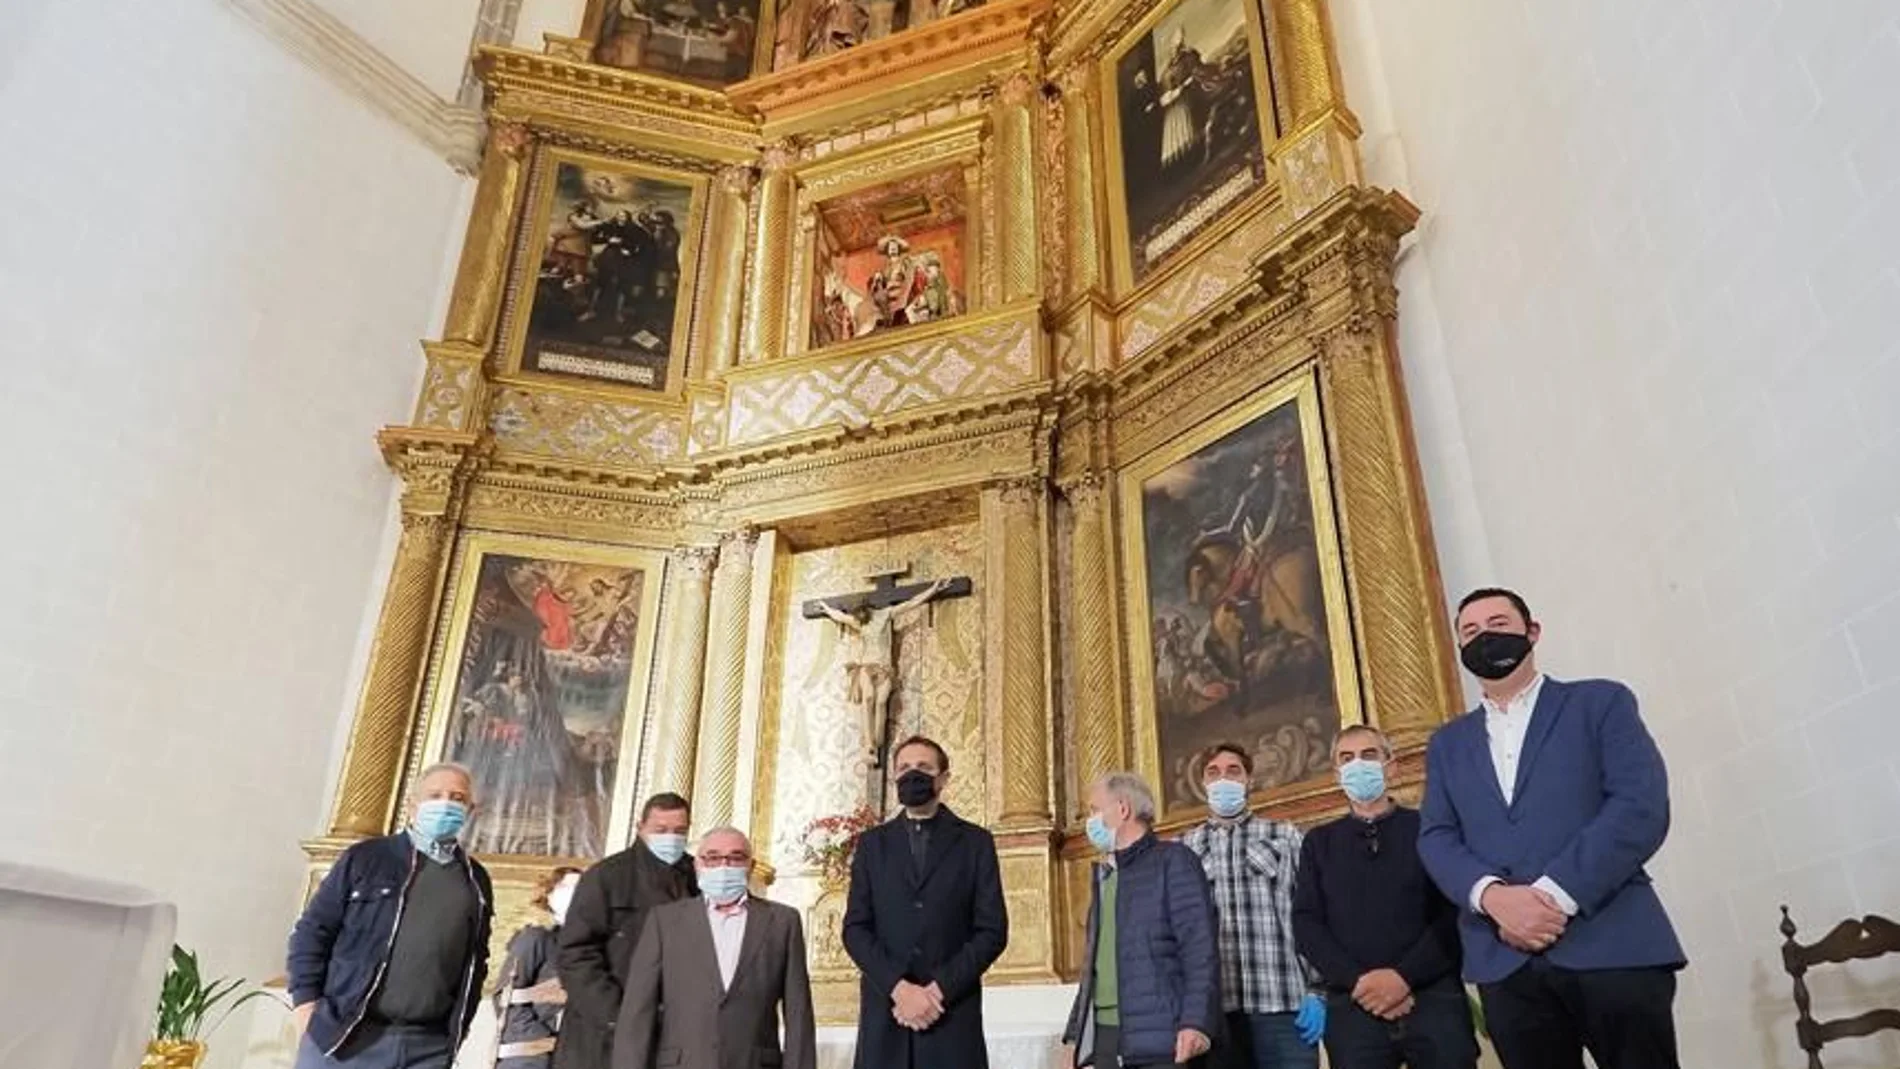 El presidente de la Diputación de Valladolid, Conrado Íscar, junto al alcalde de Mota del Marqués, Gerardo Hernández, ha presidido la recepción del retablo mayor de la Iglesia de San Martín